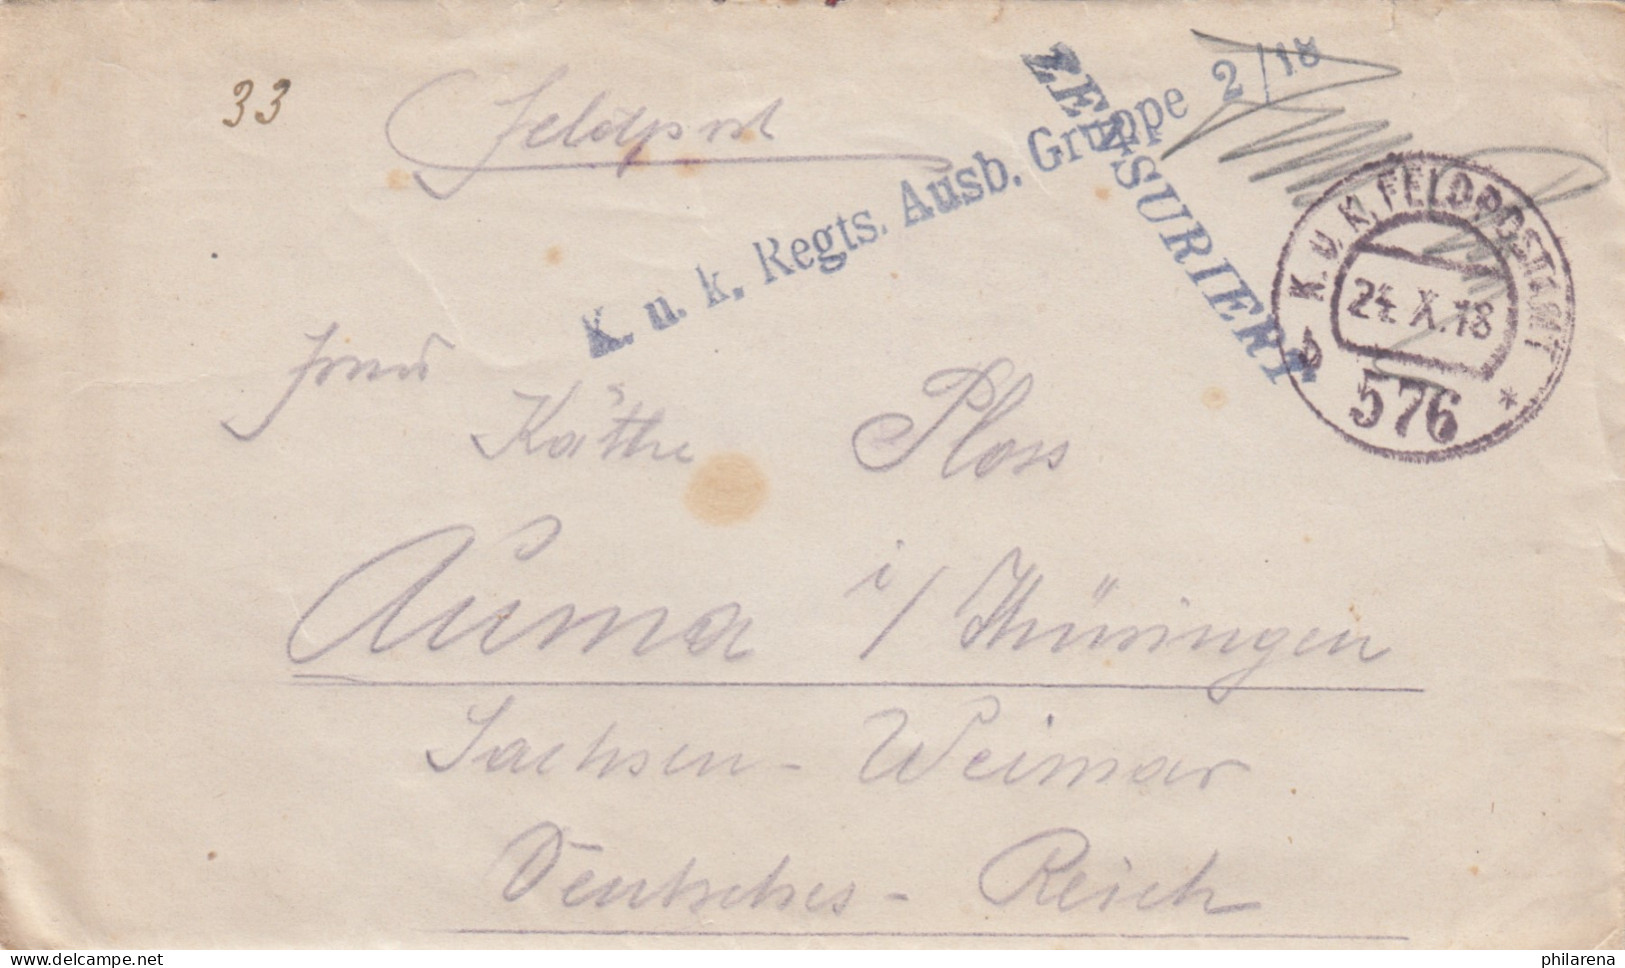 1918 Feldpostamt Ausbildungsgruppe, Zensiert Nach Auma/Thüringen Mit Briefinhalt - Lettres & Documents